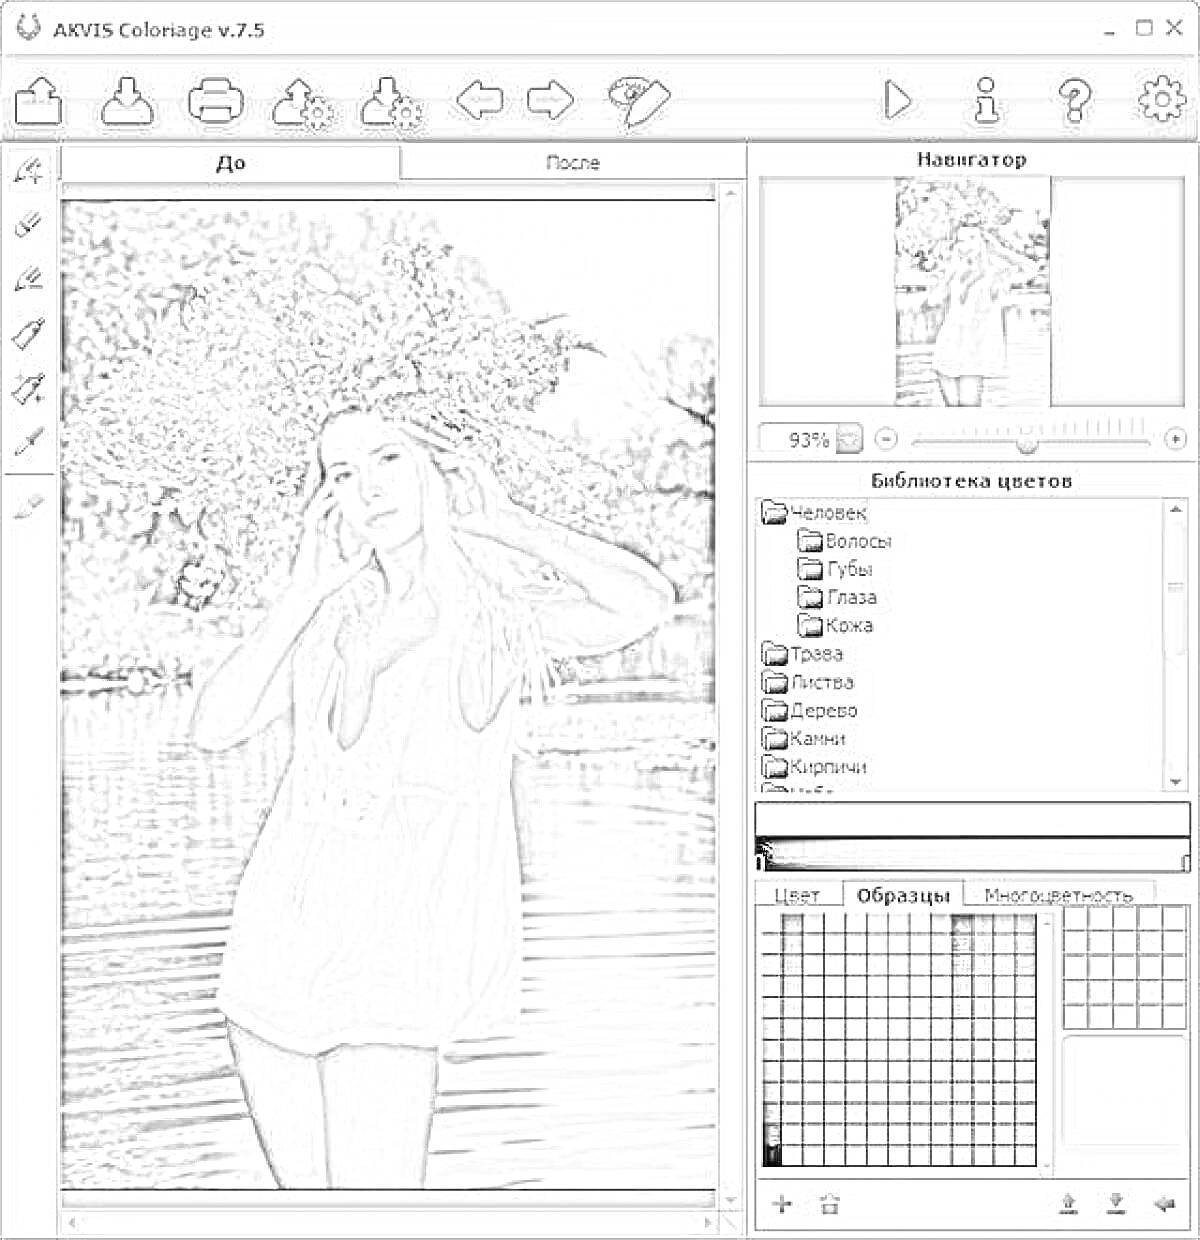 AKVIS Coloriage v7.0 - интерфейс программы с изображением девушки в белом платье и венком из цветов, стоящей у водоема